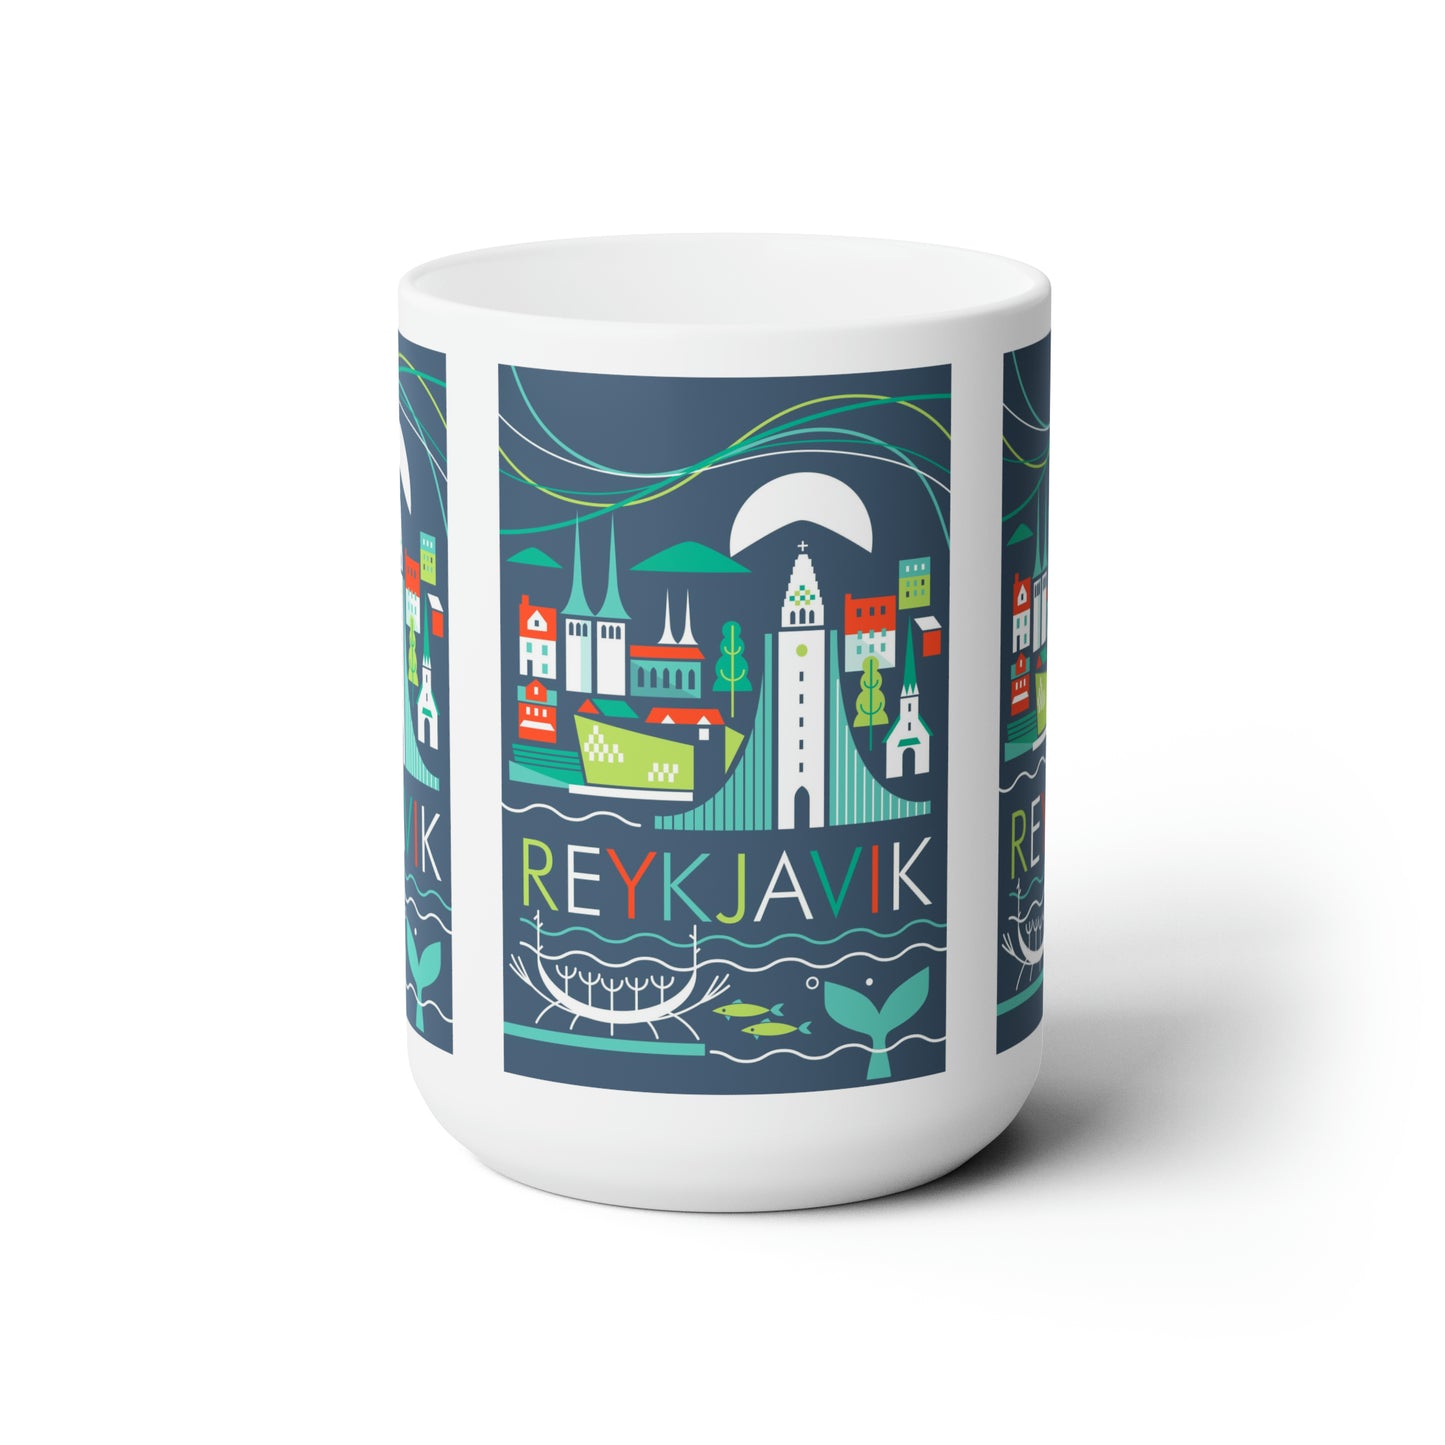 Reykjavik Ceramic Mug 11oz or 15oz